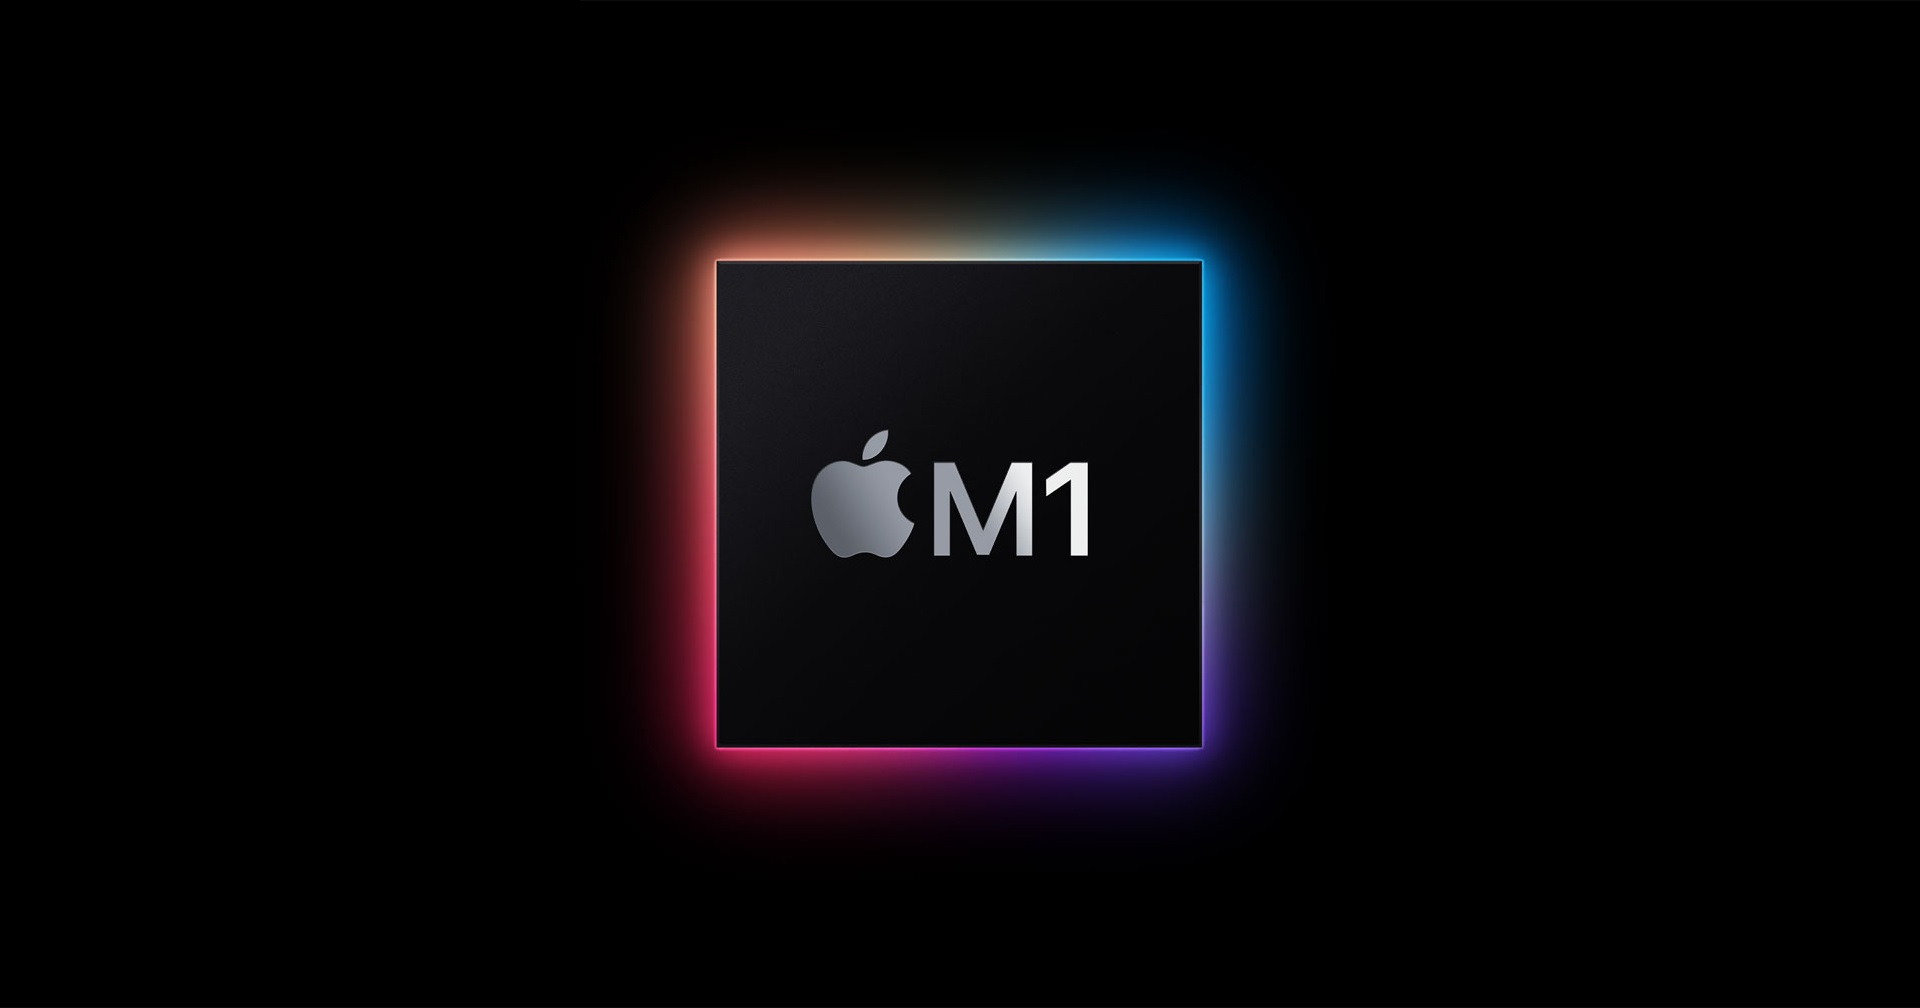 ชิปใหม่ Apple อาจใช้ชื่อ M1 Pro และ M1 Max หลังโผล่อยู่ในบันทึกของแอปหลังบ้าน